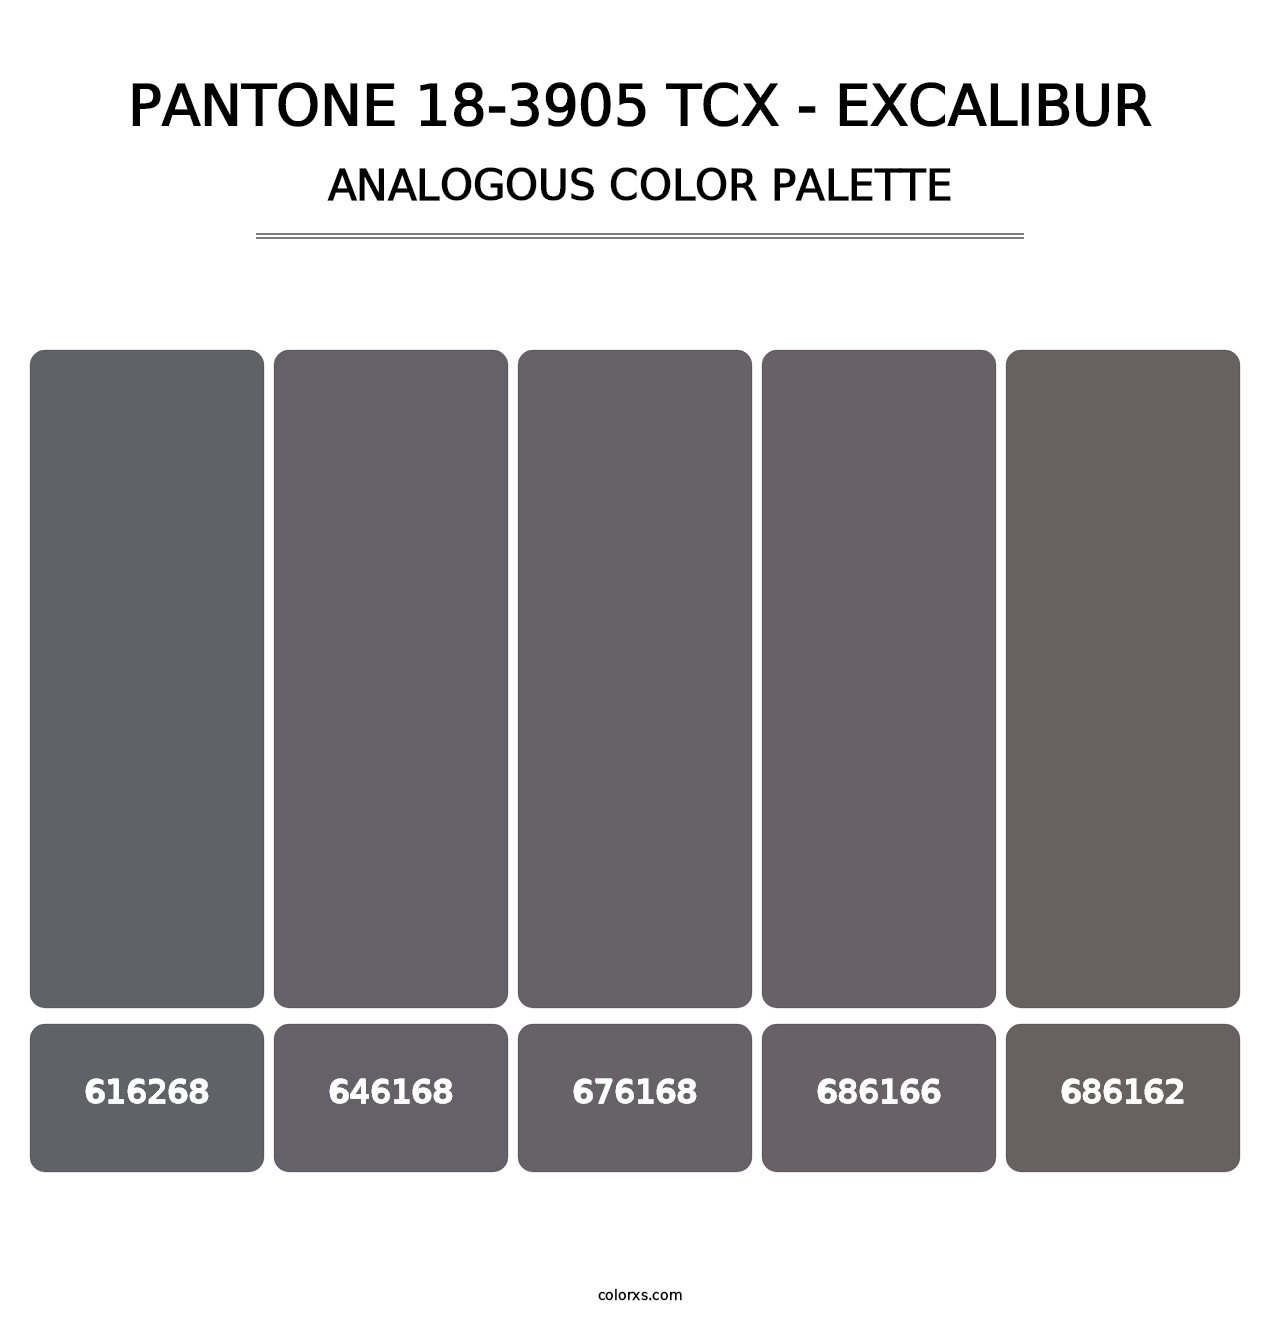 PANTONE 18-3905 TCX - Excalibur - Analogous Color Palette